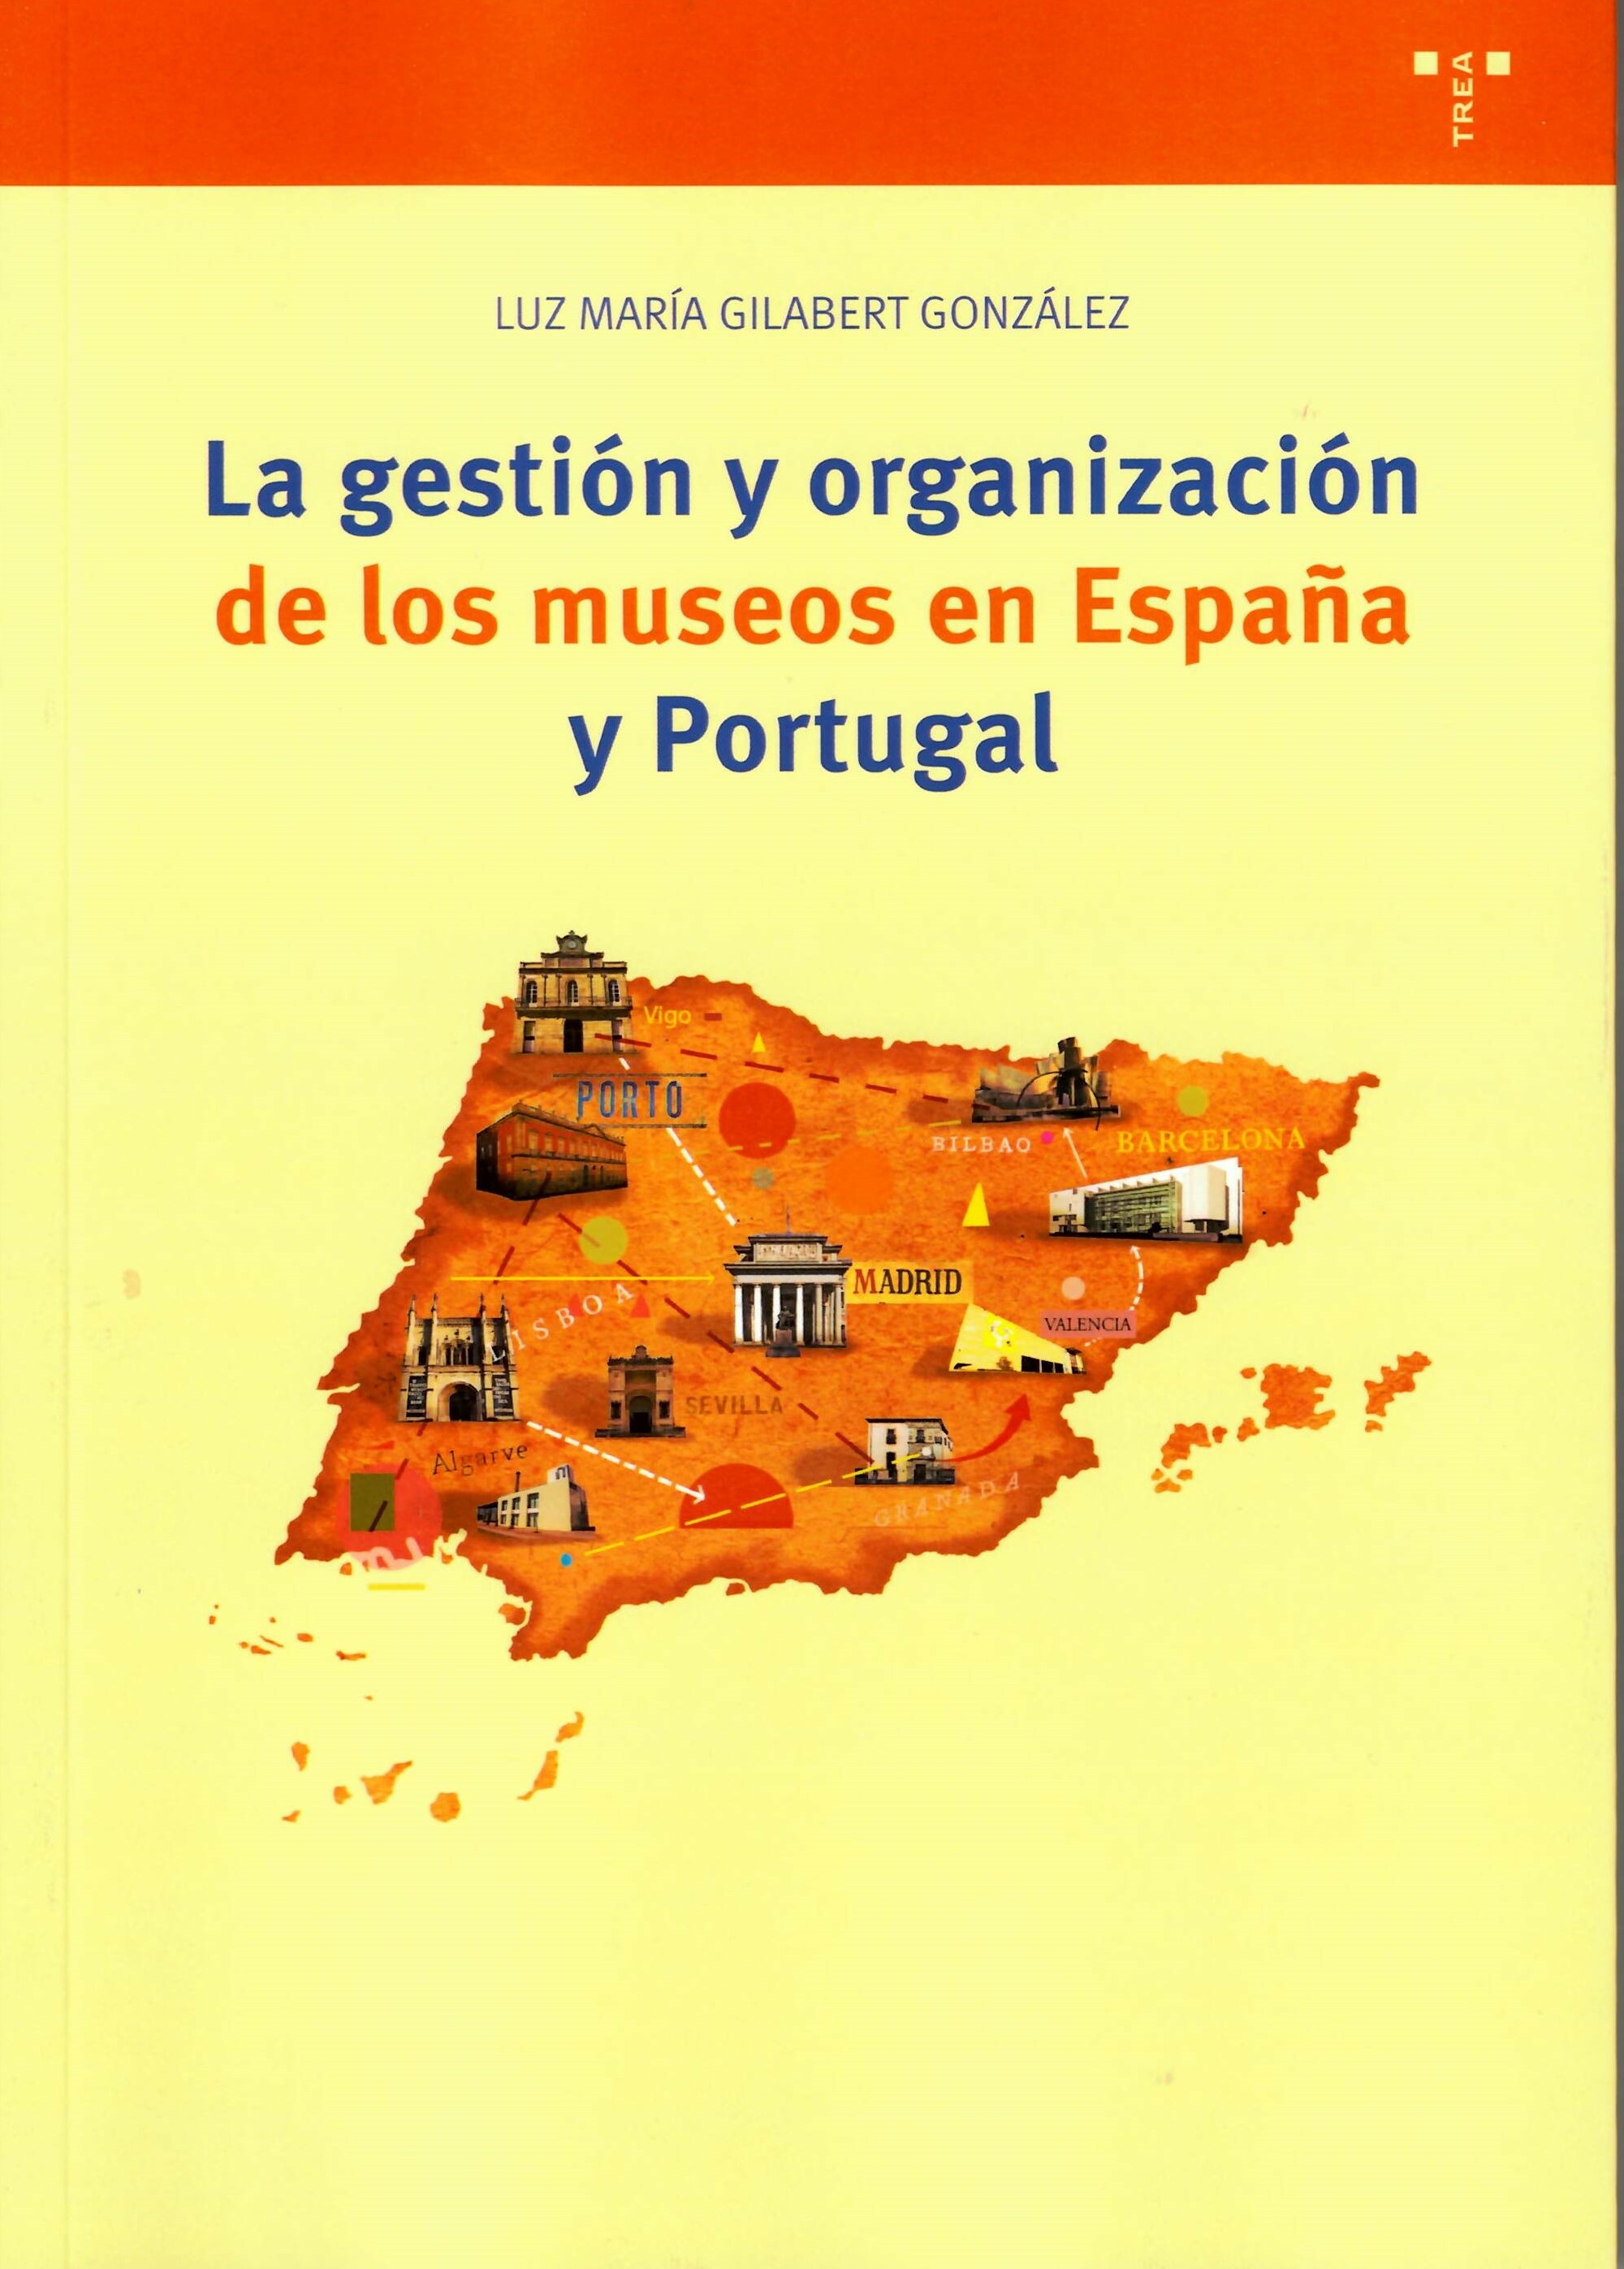 LA GESTIÓN Y ORGANIZACIÓN DE LOS MUSEOS EN ESPAÑA Y PORTUGAL